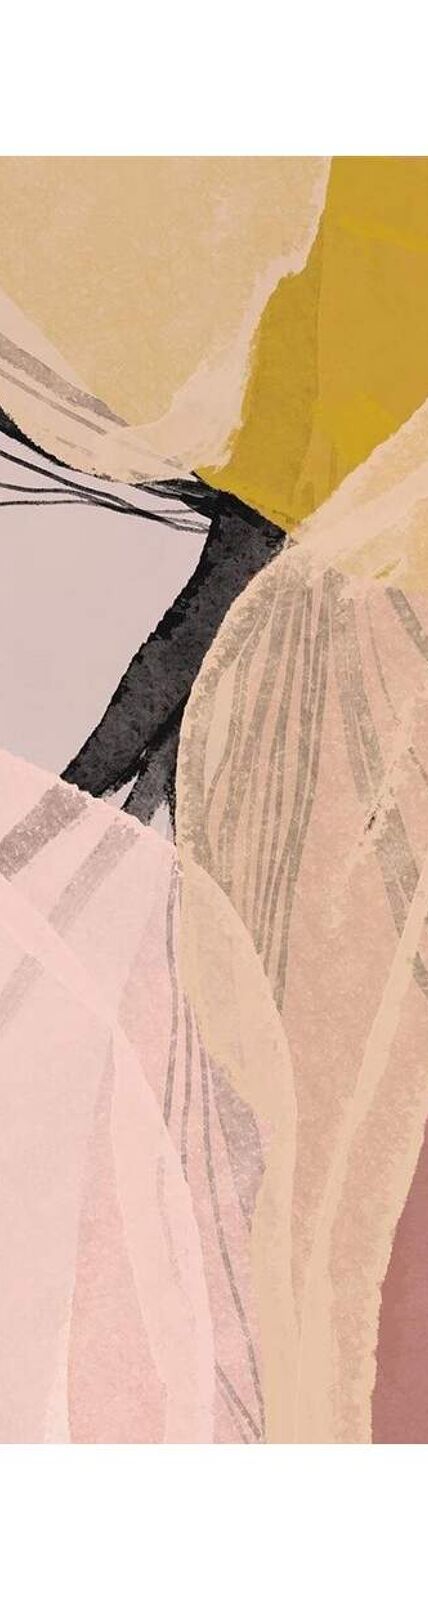 Gemma Bardot - Imprimé FLORAL LAYERS (Multicolore) (50 cm x 40 cm) - UTPM7523